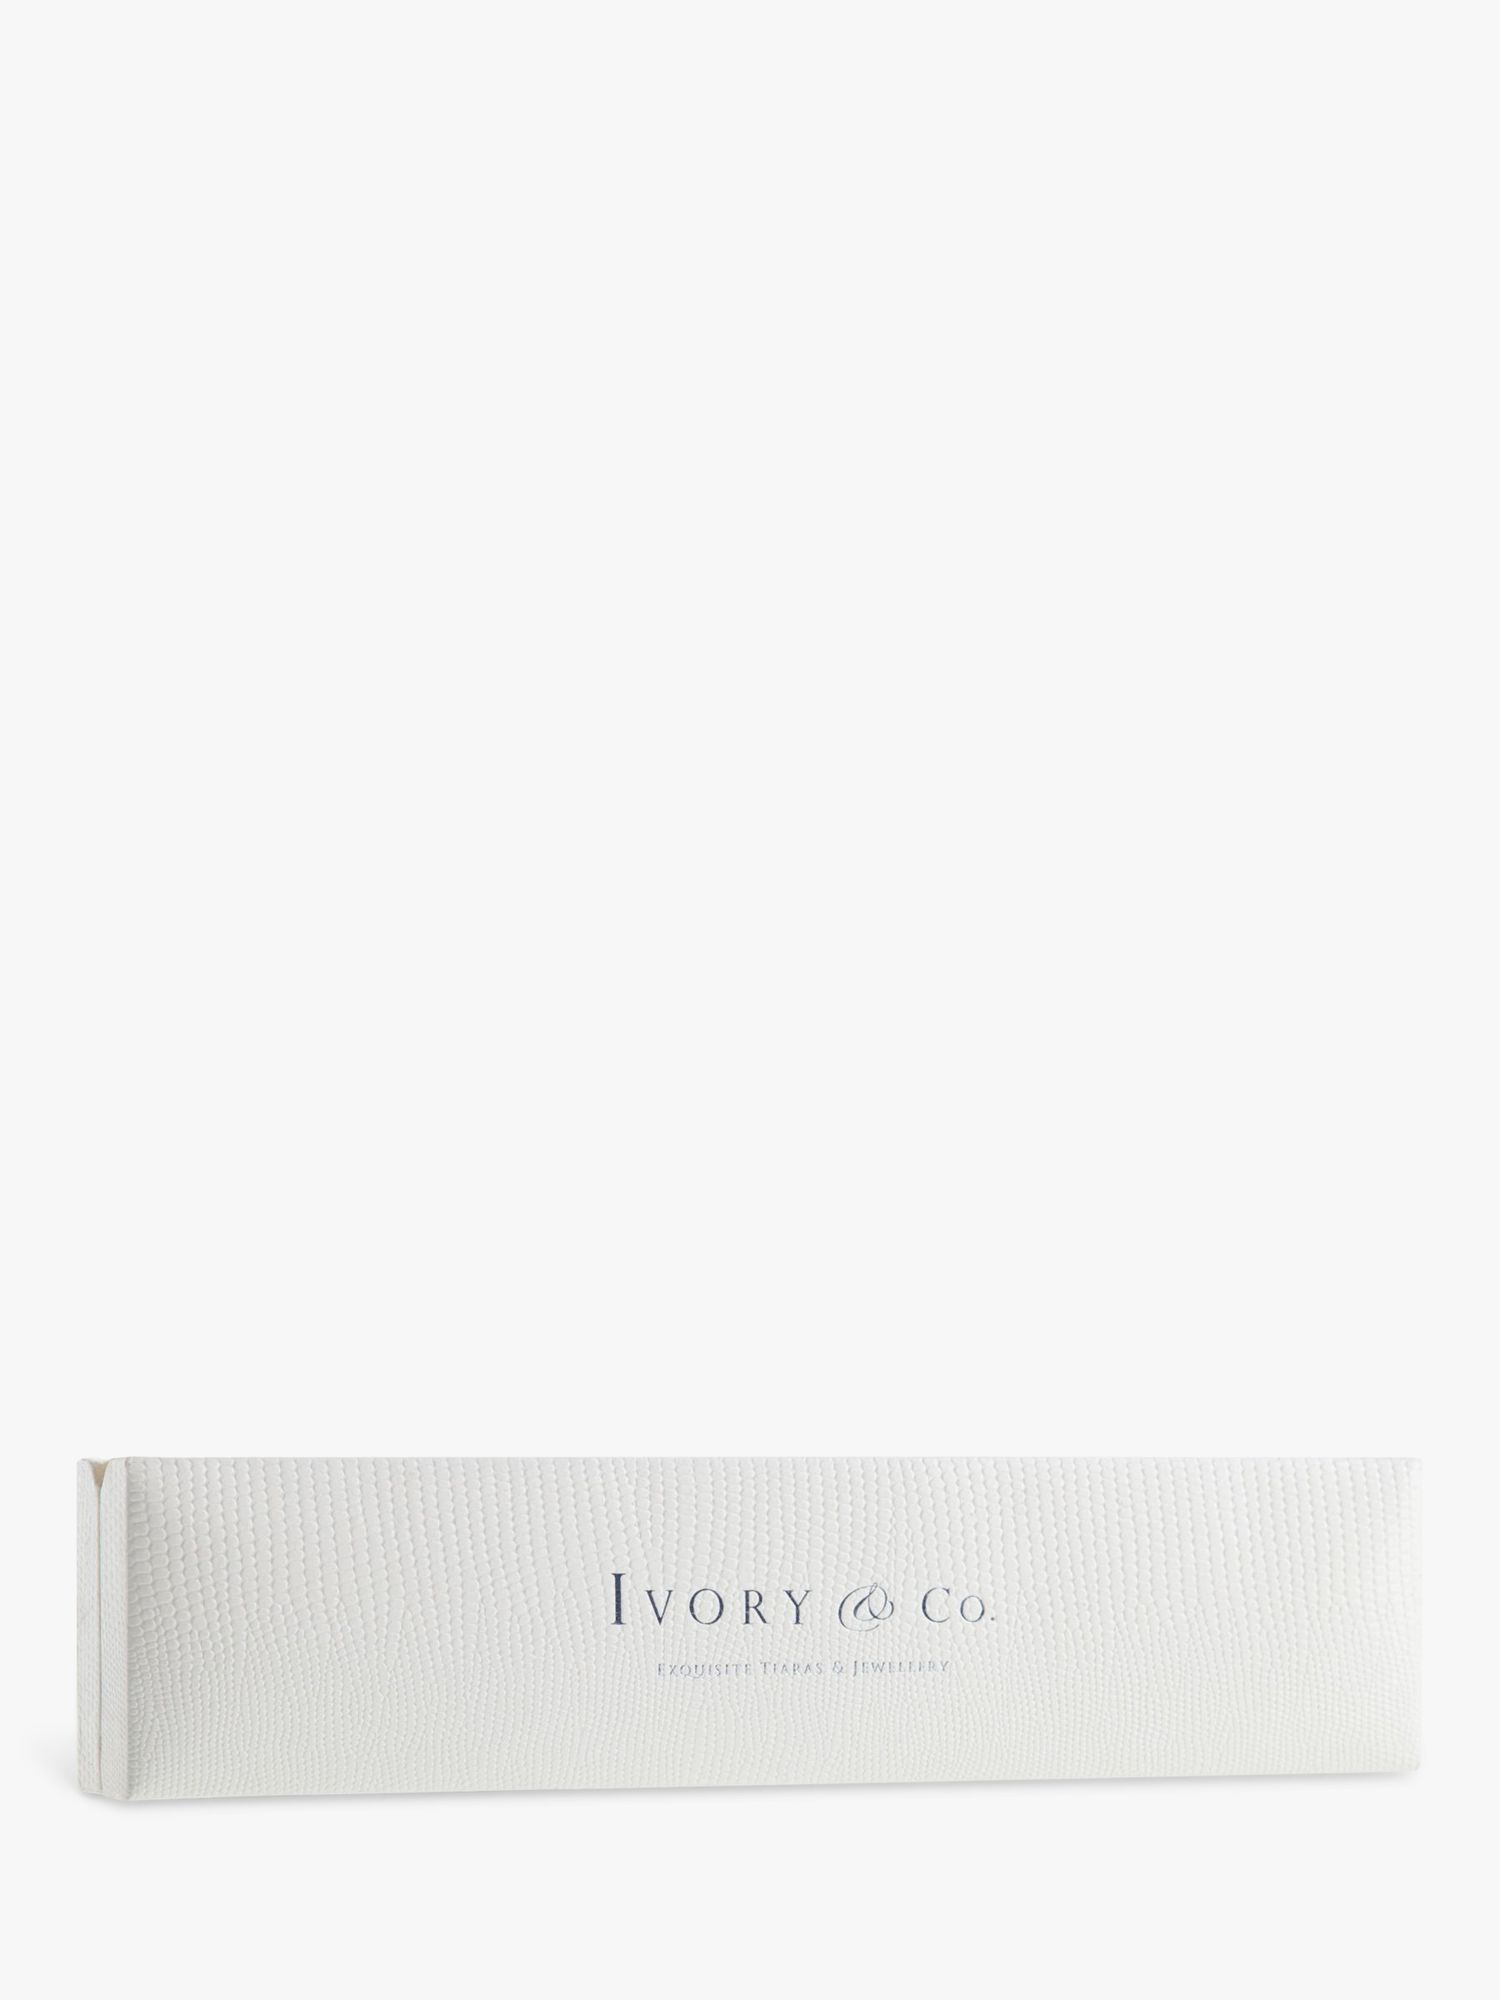 Buy Ivory & Co. Crystal Bracelet, Silver Online at johnlewis.com